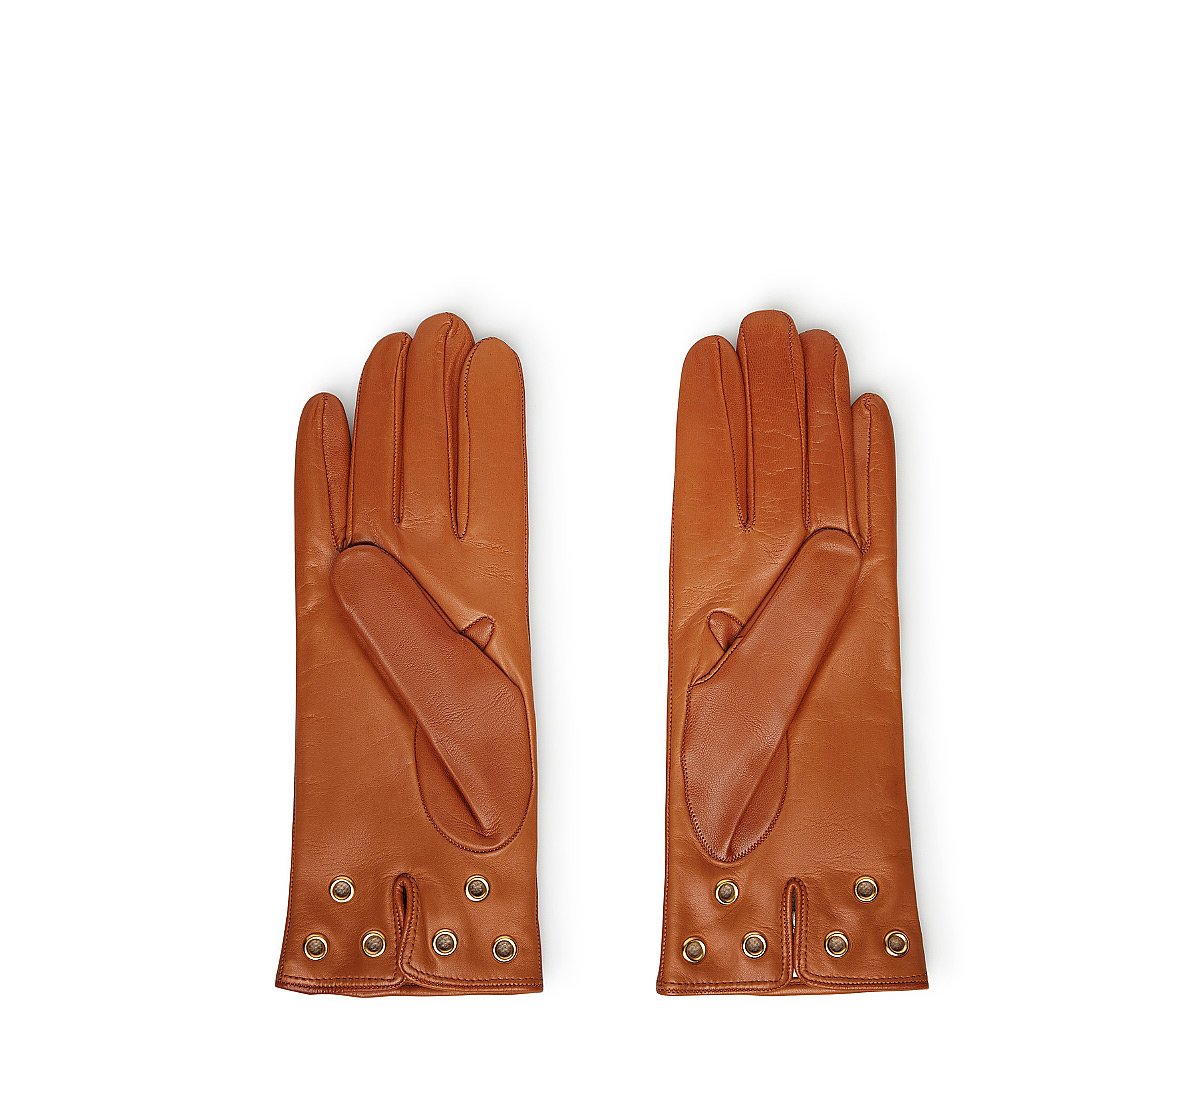 Leather appliqué gloves